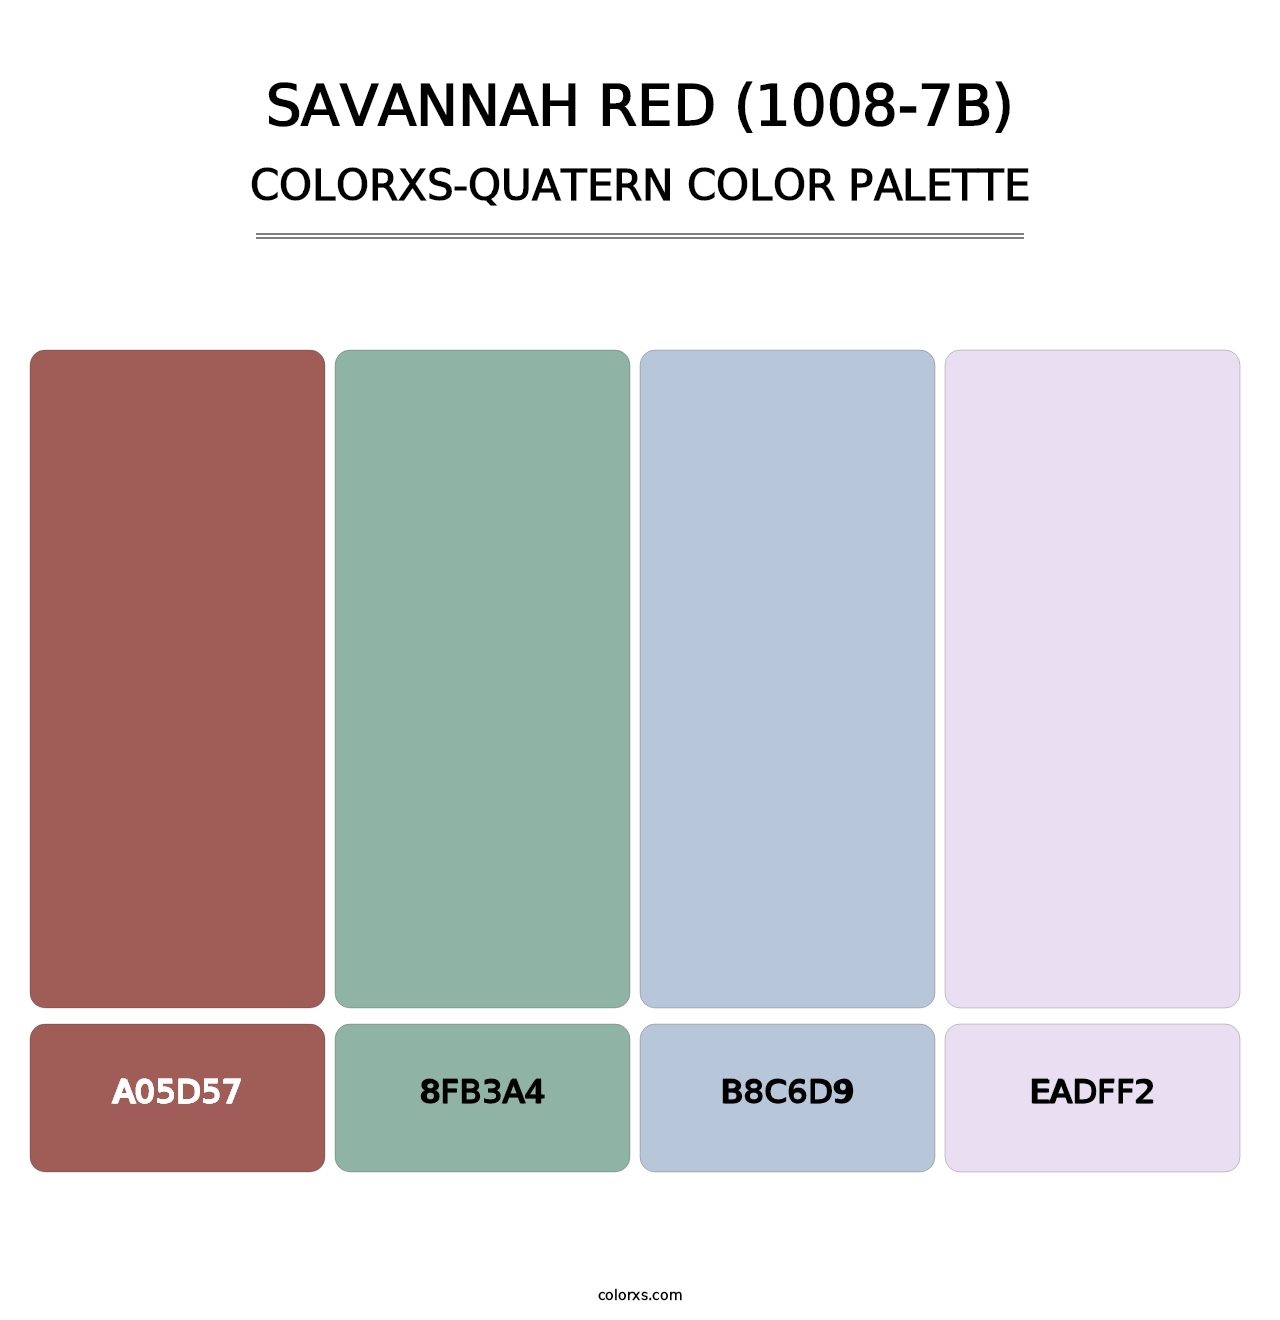 Savannah Red (1008-7B) - Colorxs Quatern Palette